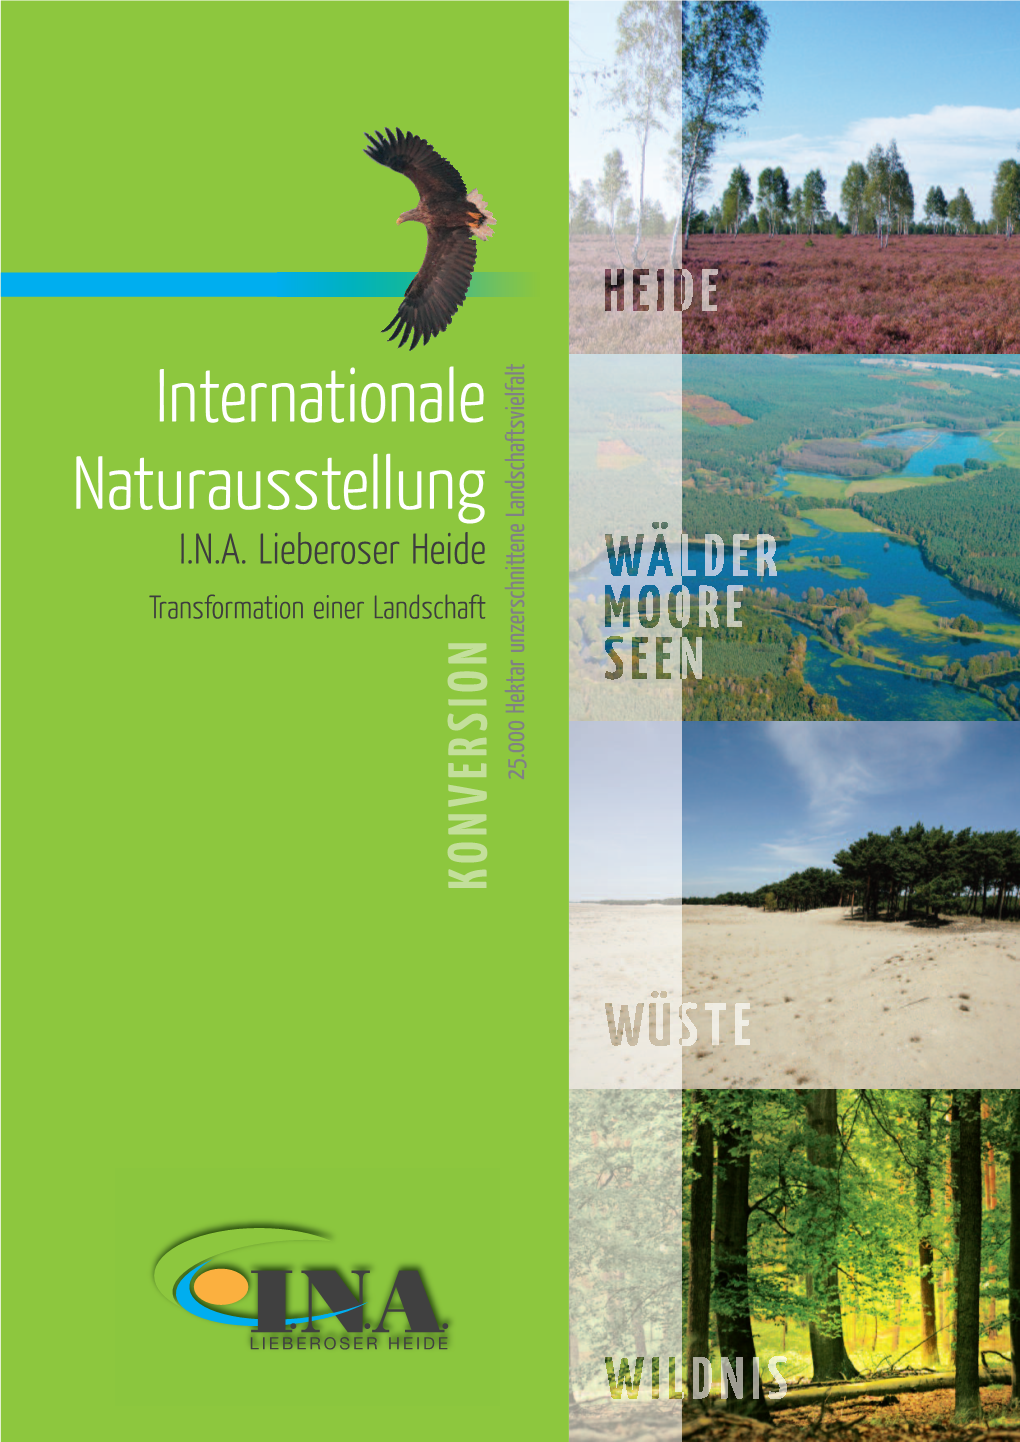 Internationale Naturausstellung – Ein Neues Ausstellungsformat